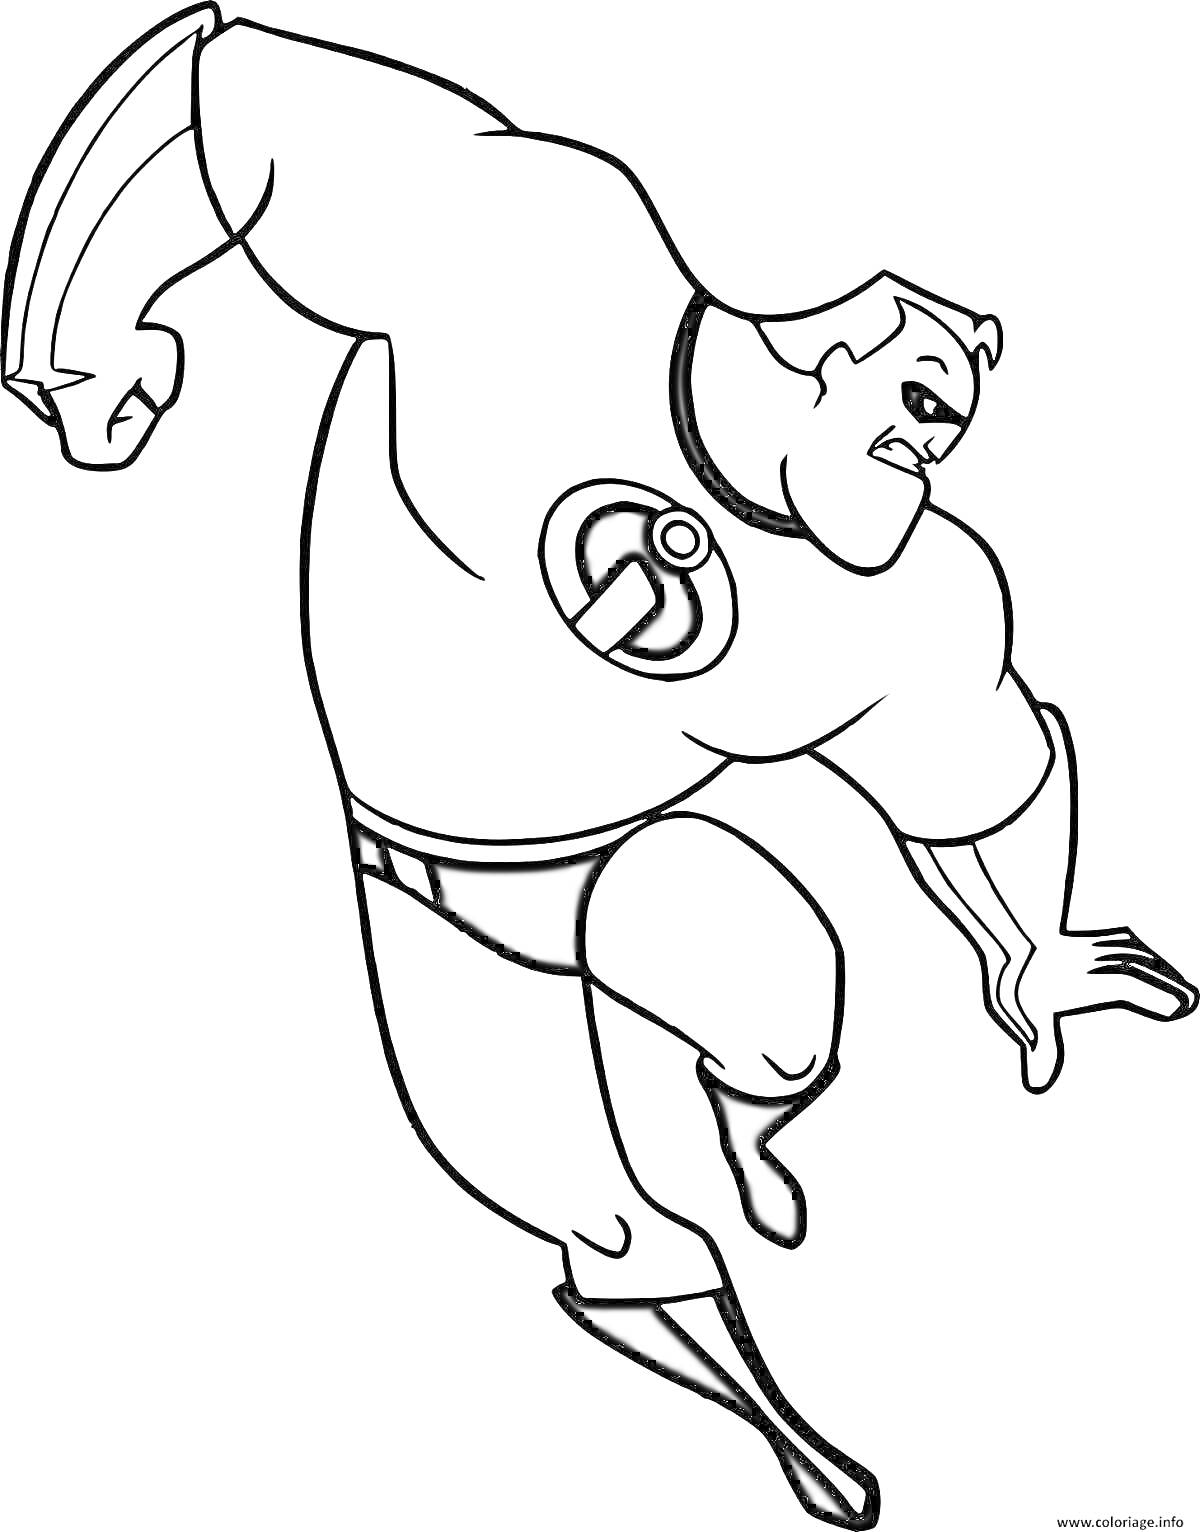 Раскраска Супергерой в маске и костюме с логотипом на груди, в прыжке с согнутыми руками и ногами